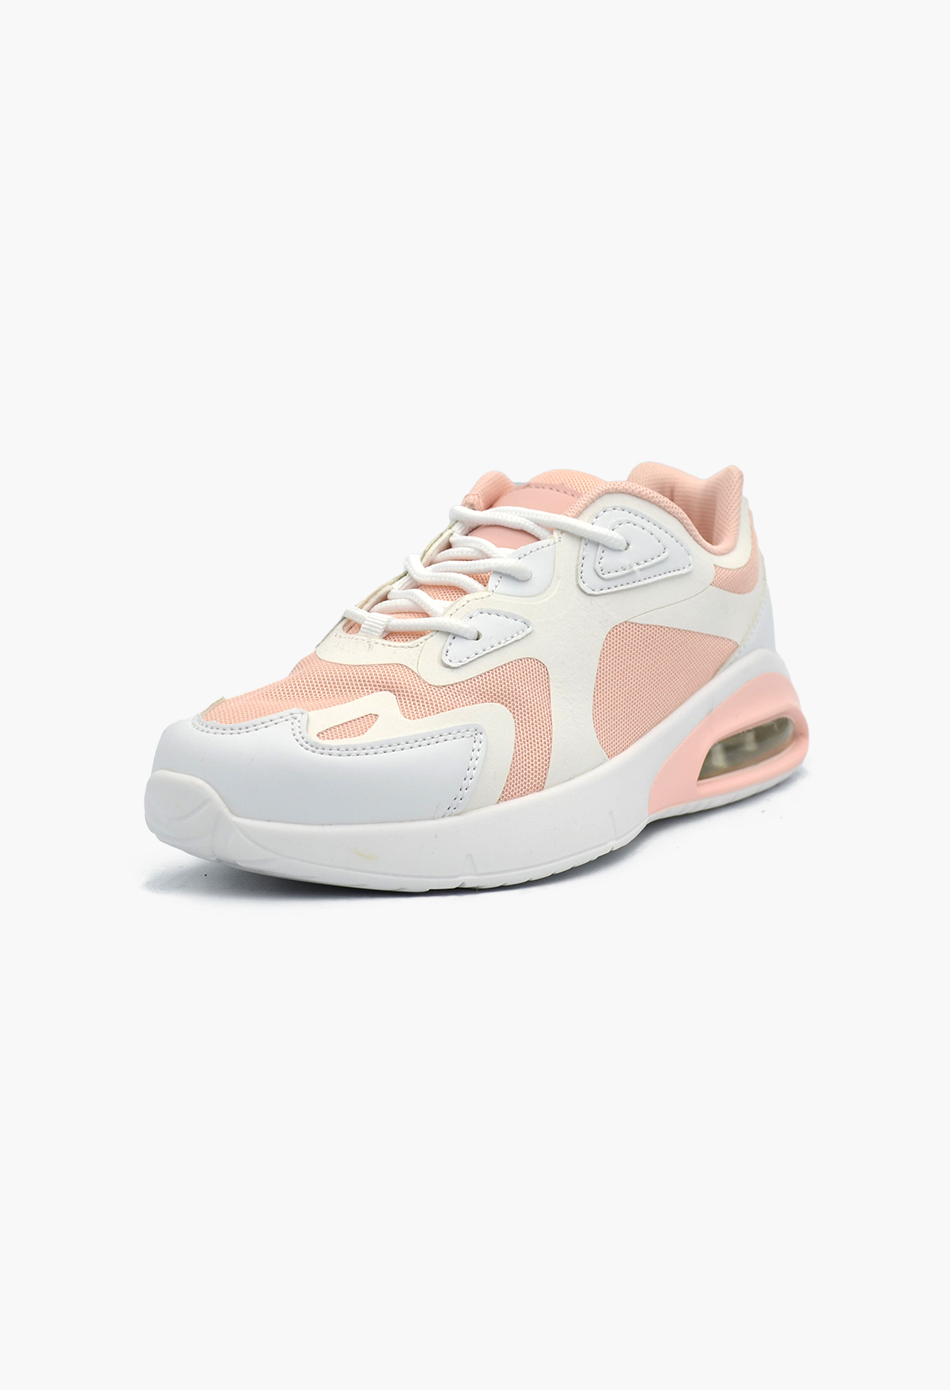 Αθλητικά Παπούτσια για Τρέξιμο Λευκό / SD0145-white/pink Γυναικεία Αθλητικά και Sneakers joya.gr